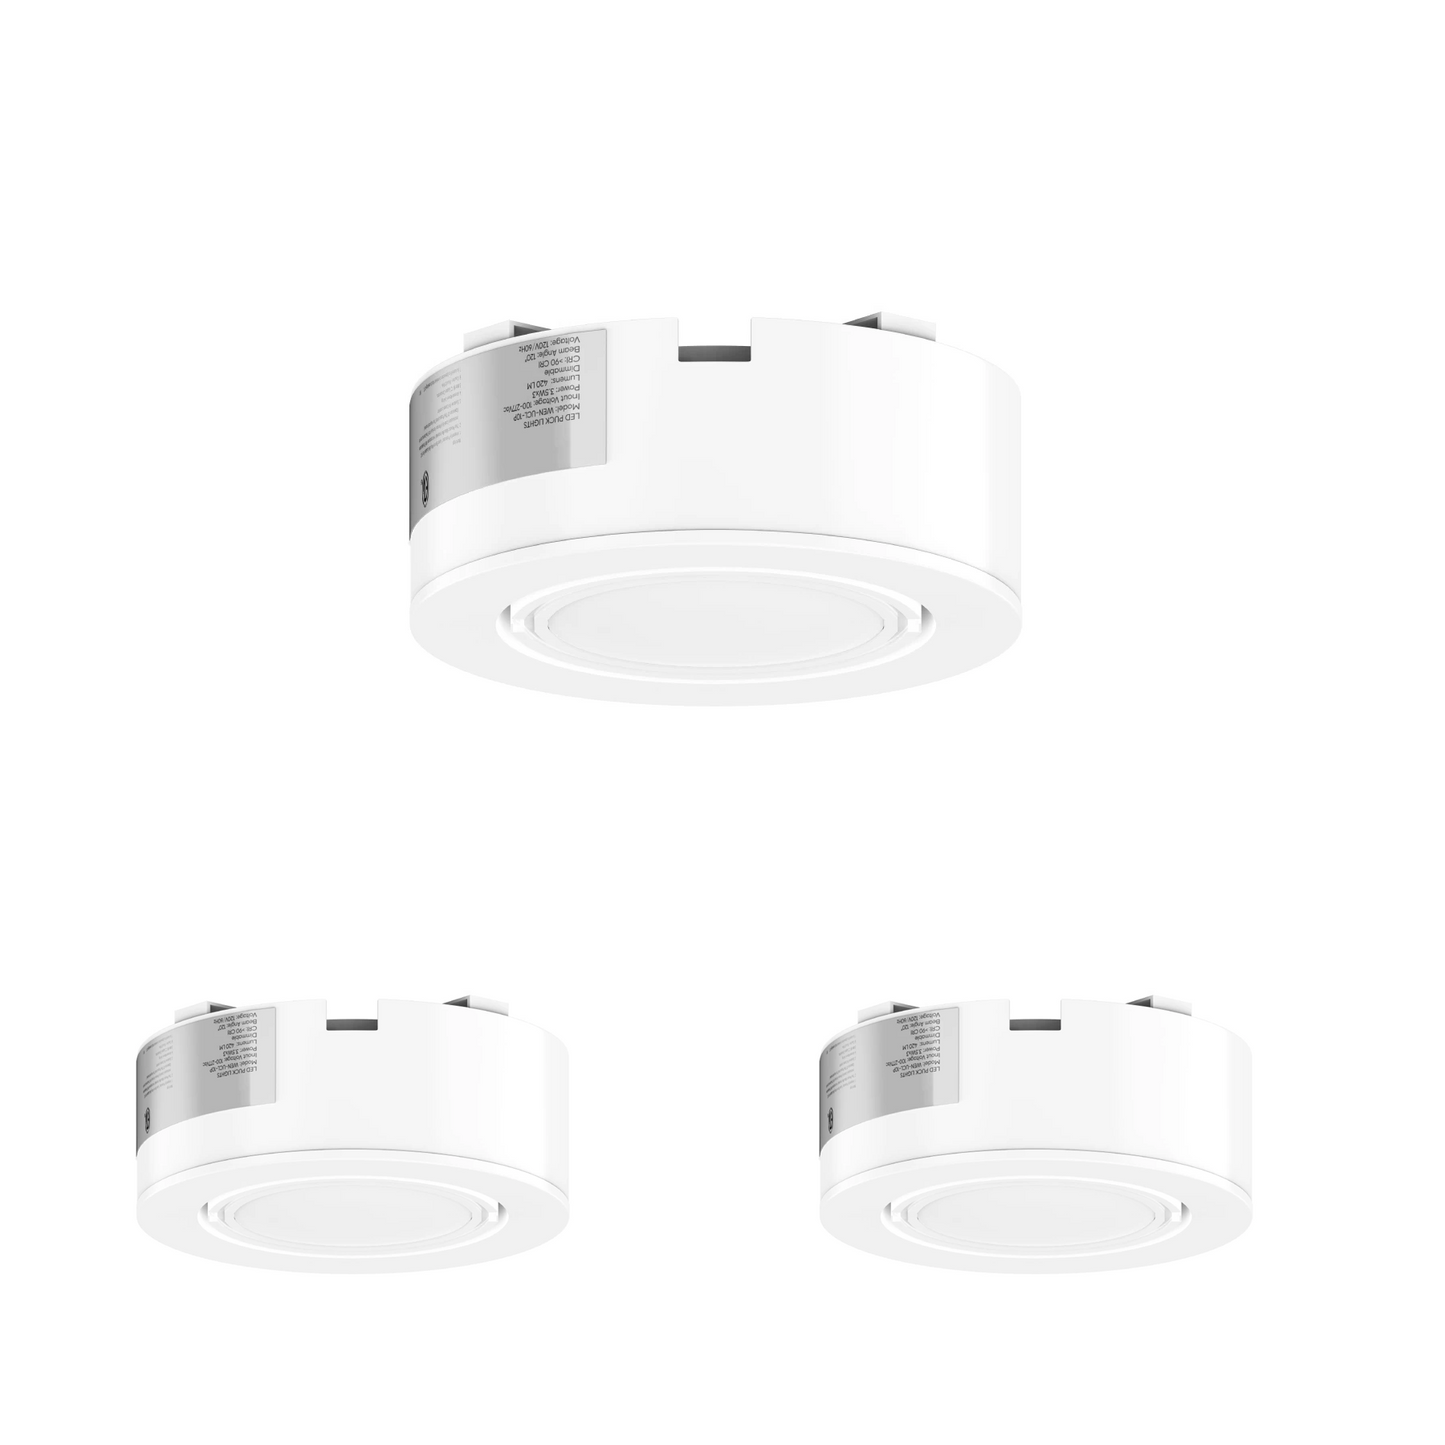 3-5w-led-puck-light-120v-140-lumens-white